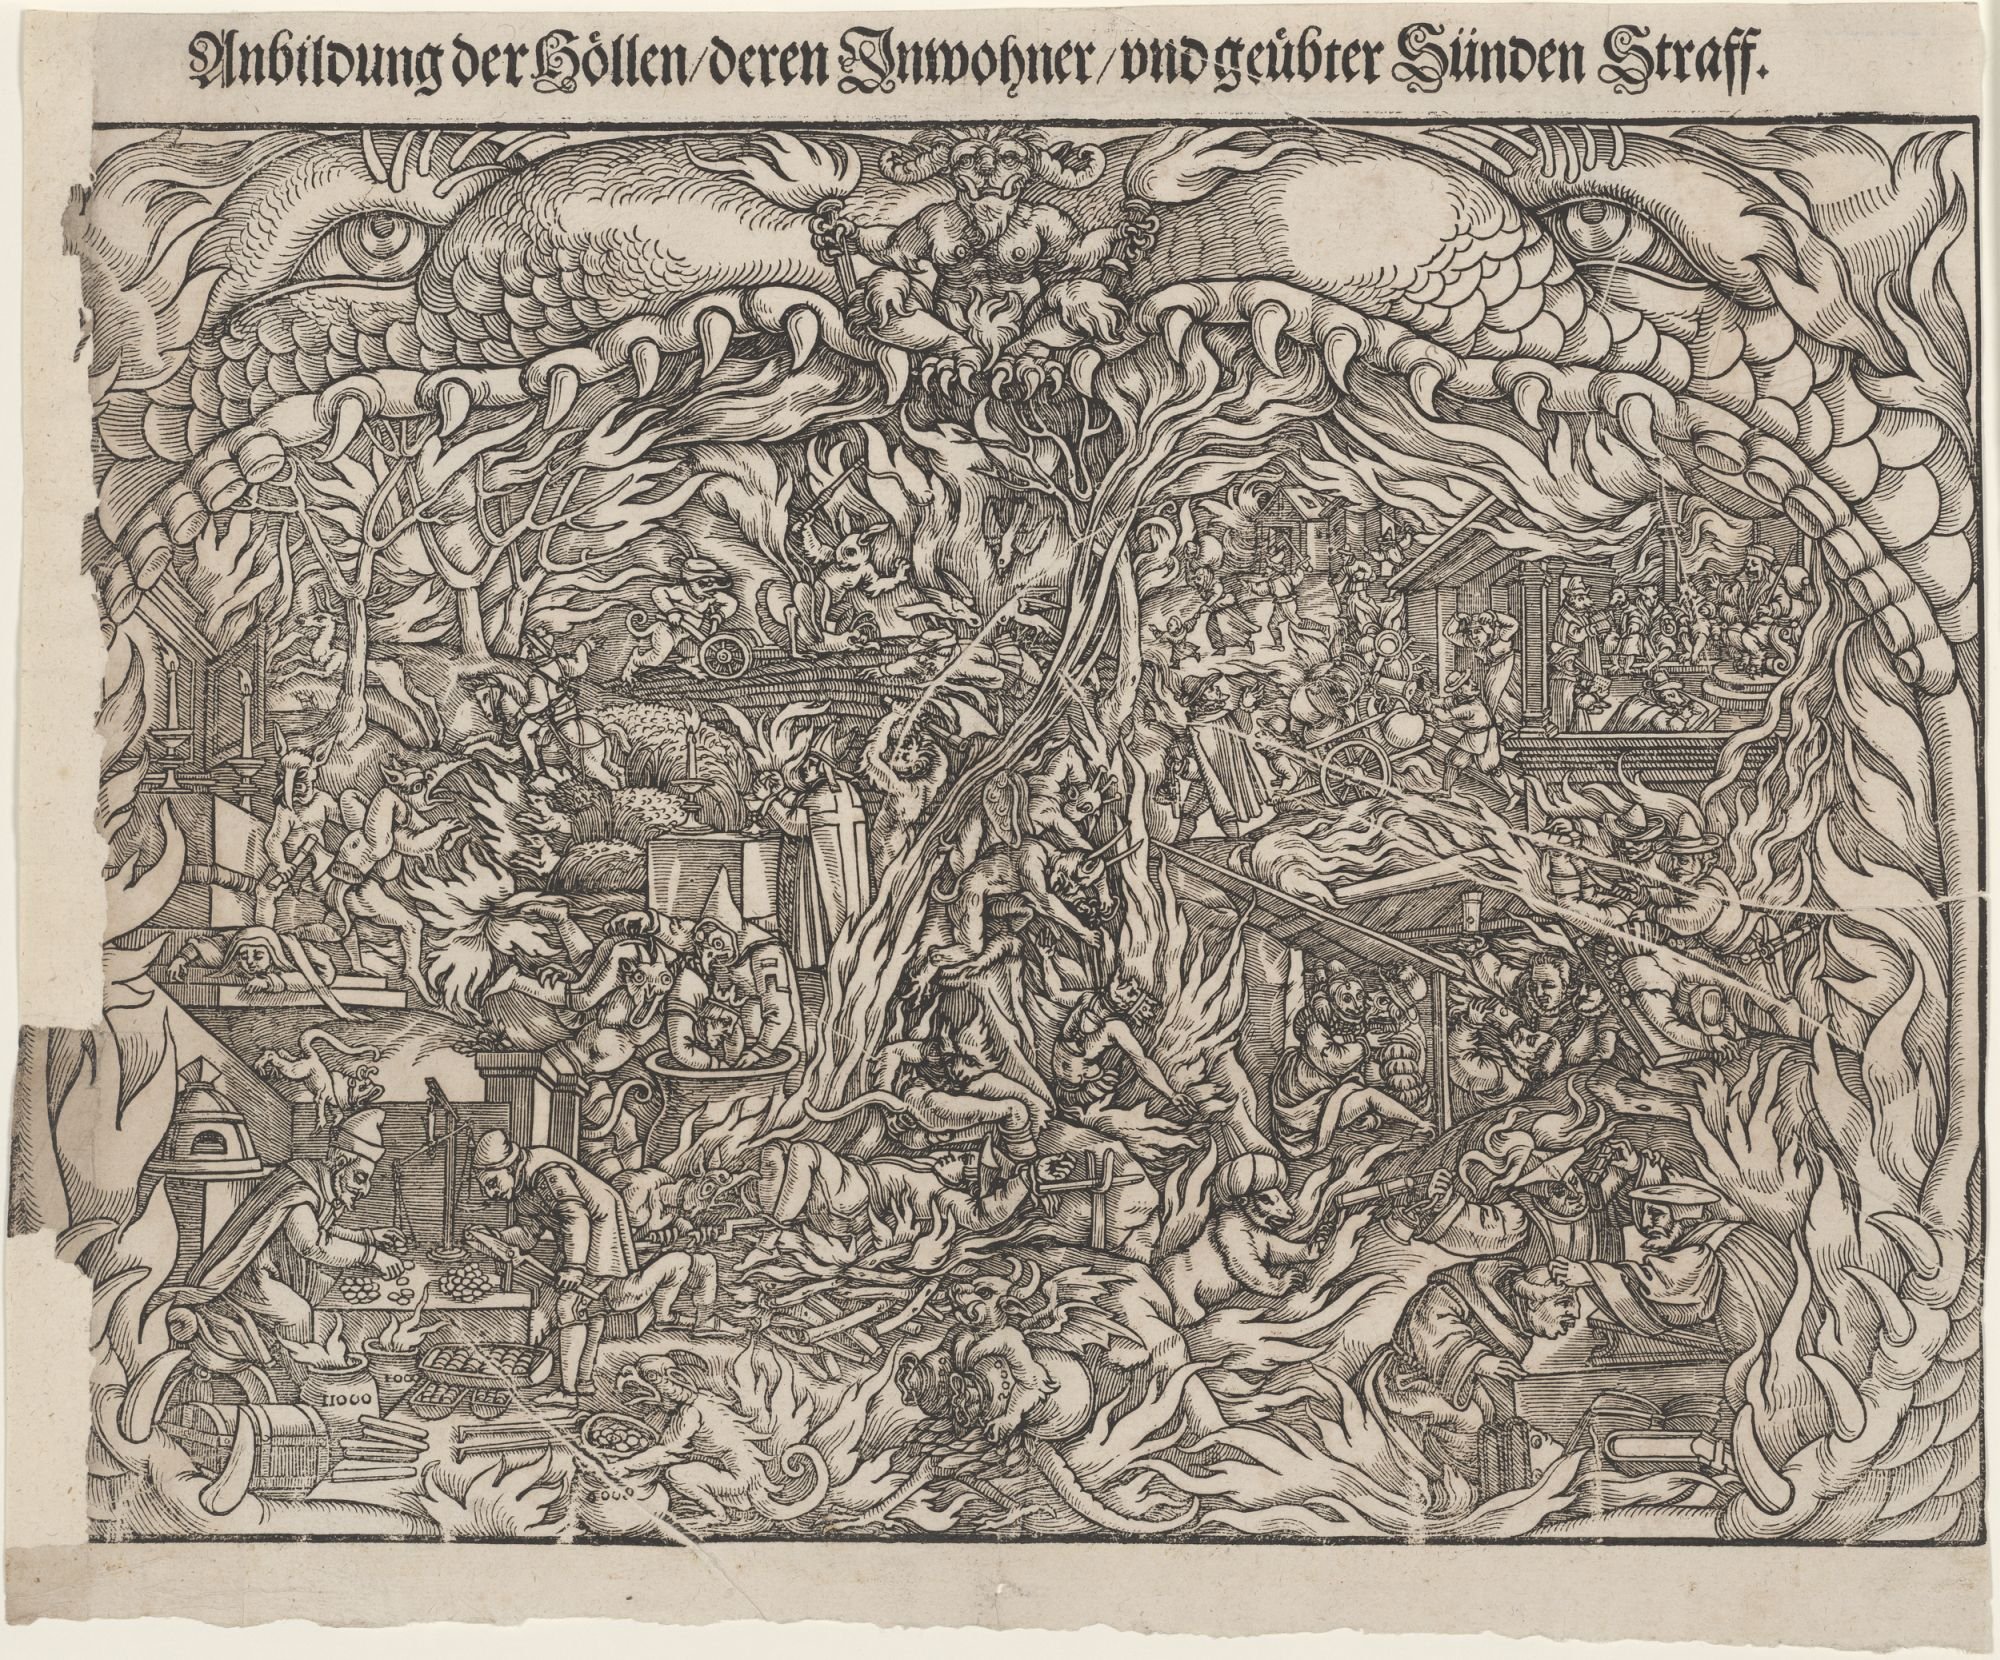 Anbildung der Hoellen/ deren Inwohner/ und geuebter Sünden Straff. (Kulturstiftung Sachsen-Anhalt Public Domain Mark)